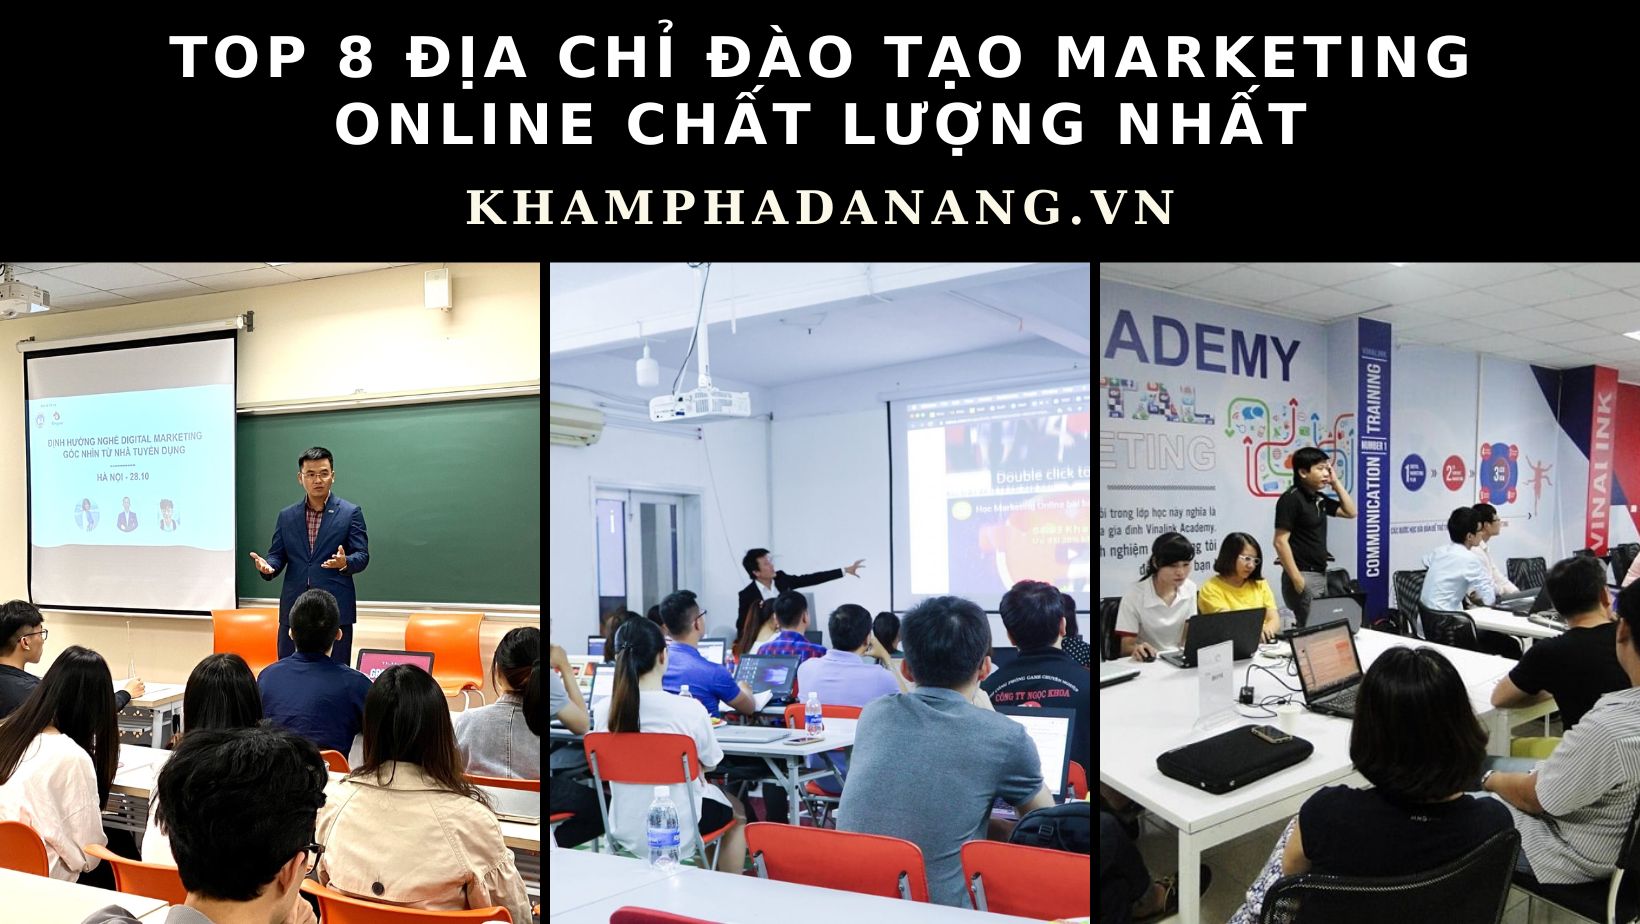 Top 8 địa chỉ đào tạo Marketing online Đà Nẵng chất lượng nhất